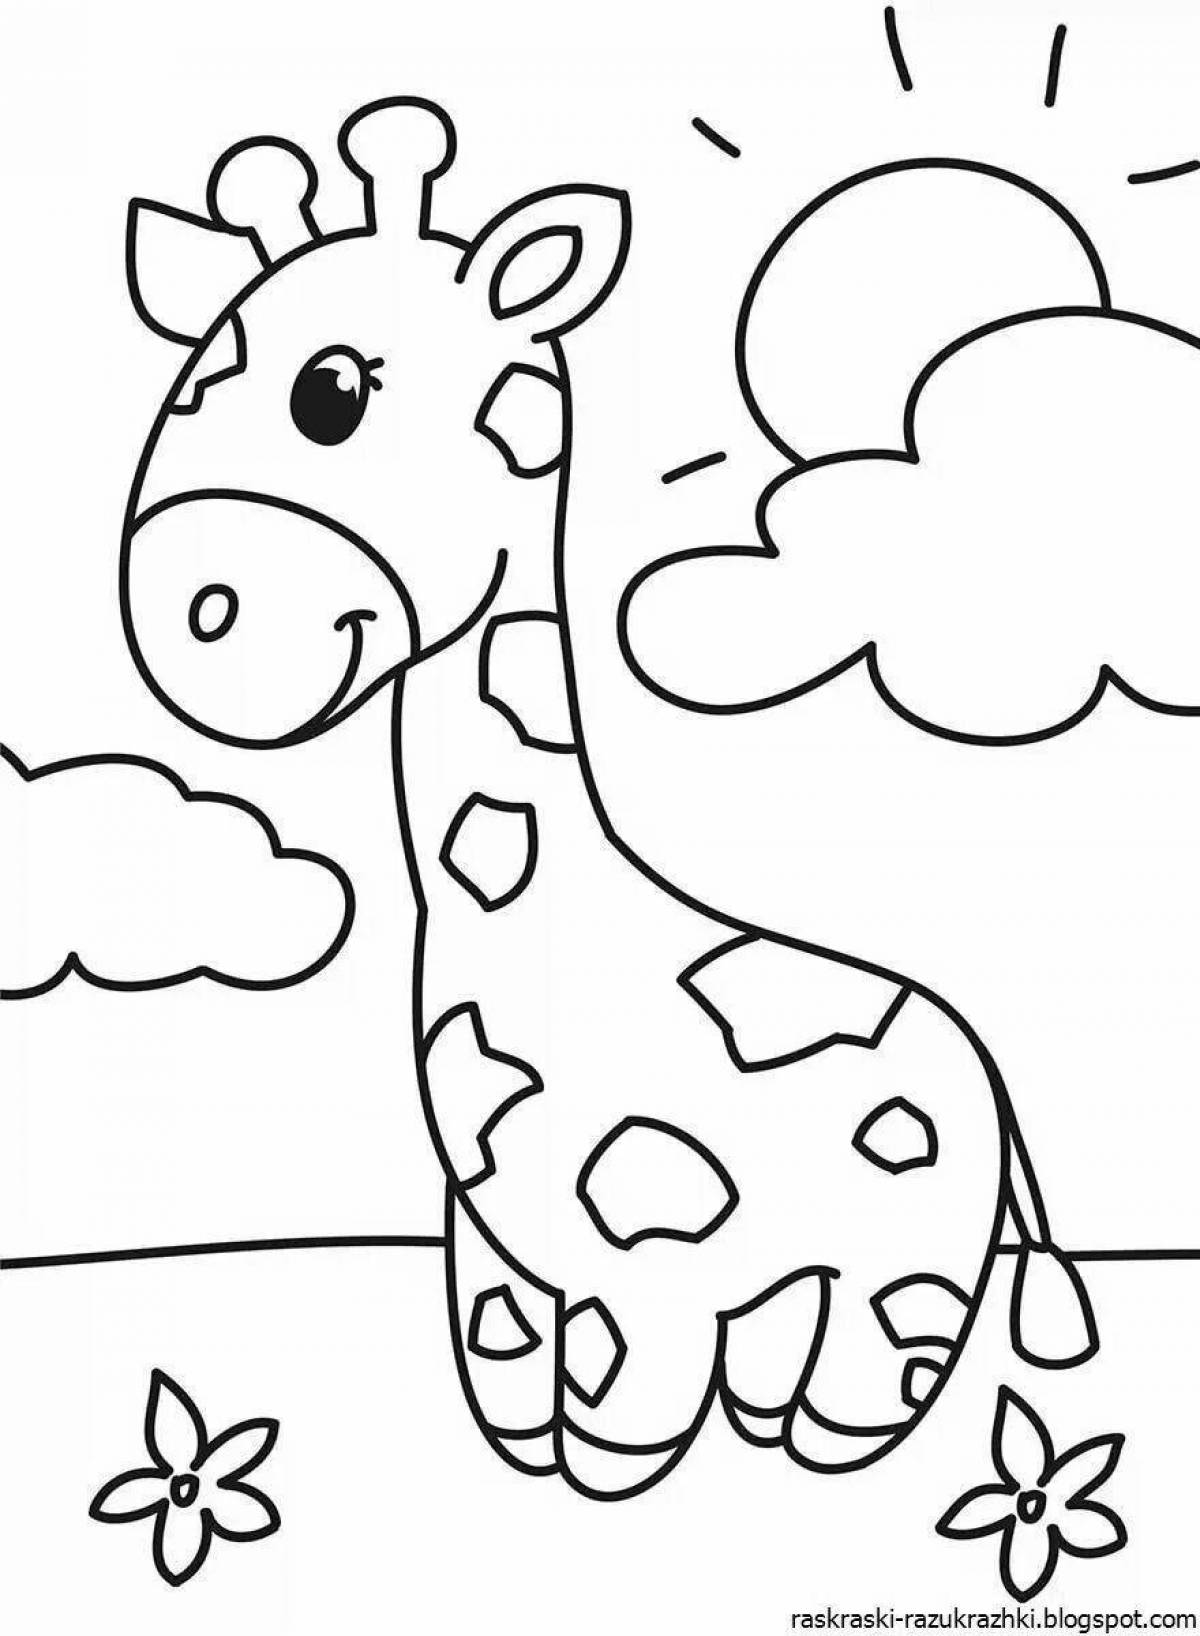 Картинки для 3 4 лет. Для раскрашивания детям. Раскраски для малышей. Раскраска малышам животные. Раскраски животных для детей.